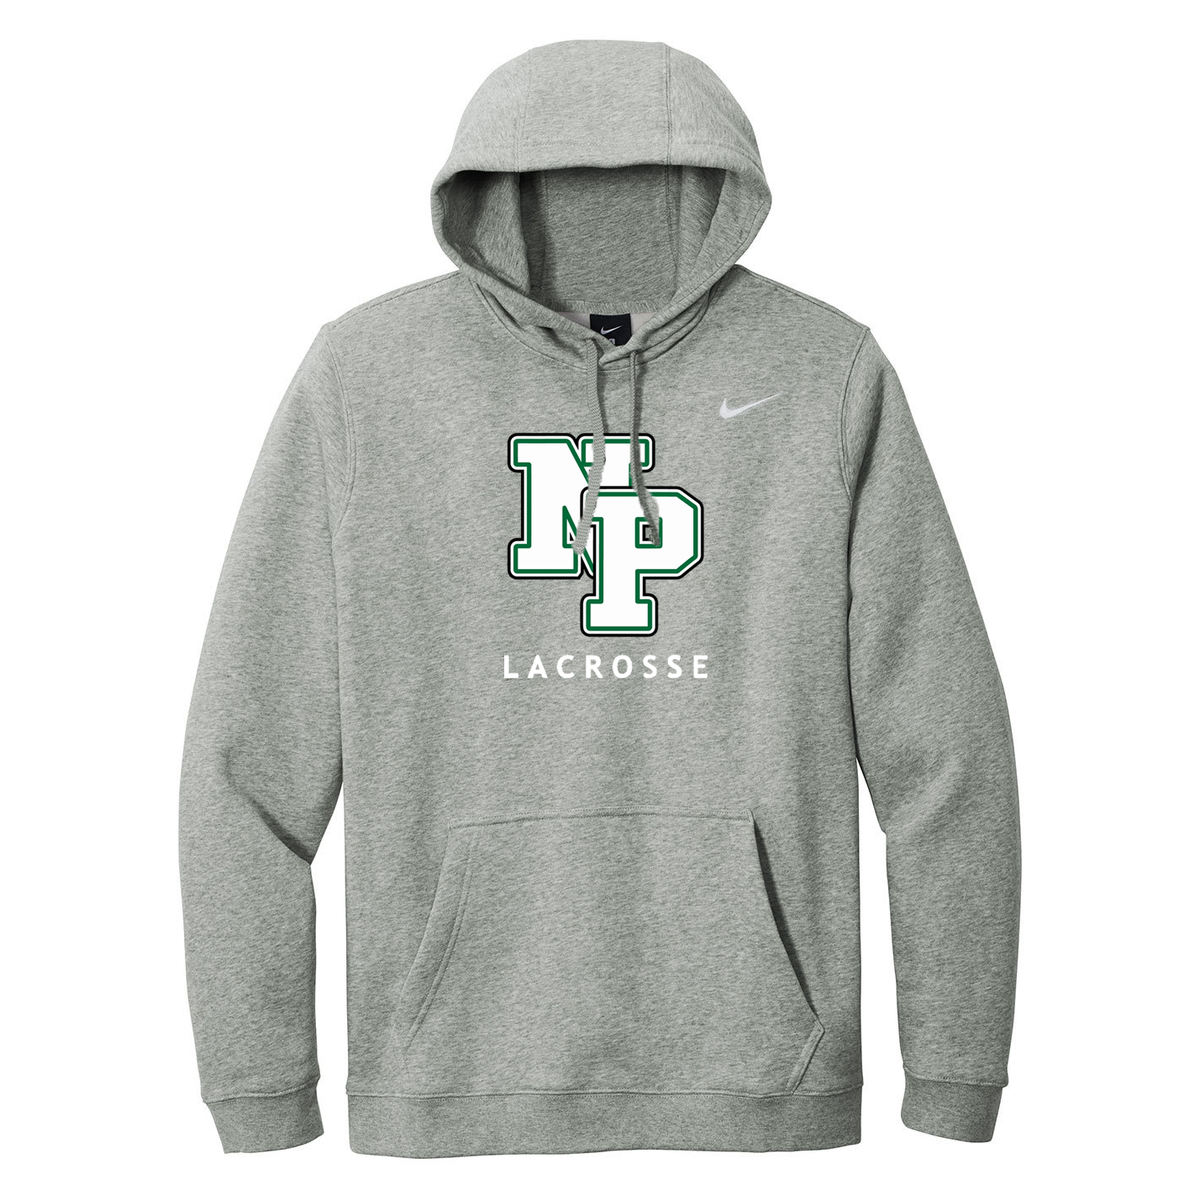 New Providence Lacrosse Nike Fleece Sweatshirt